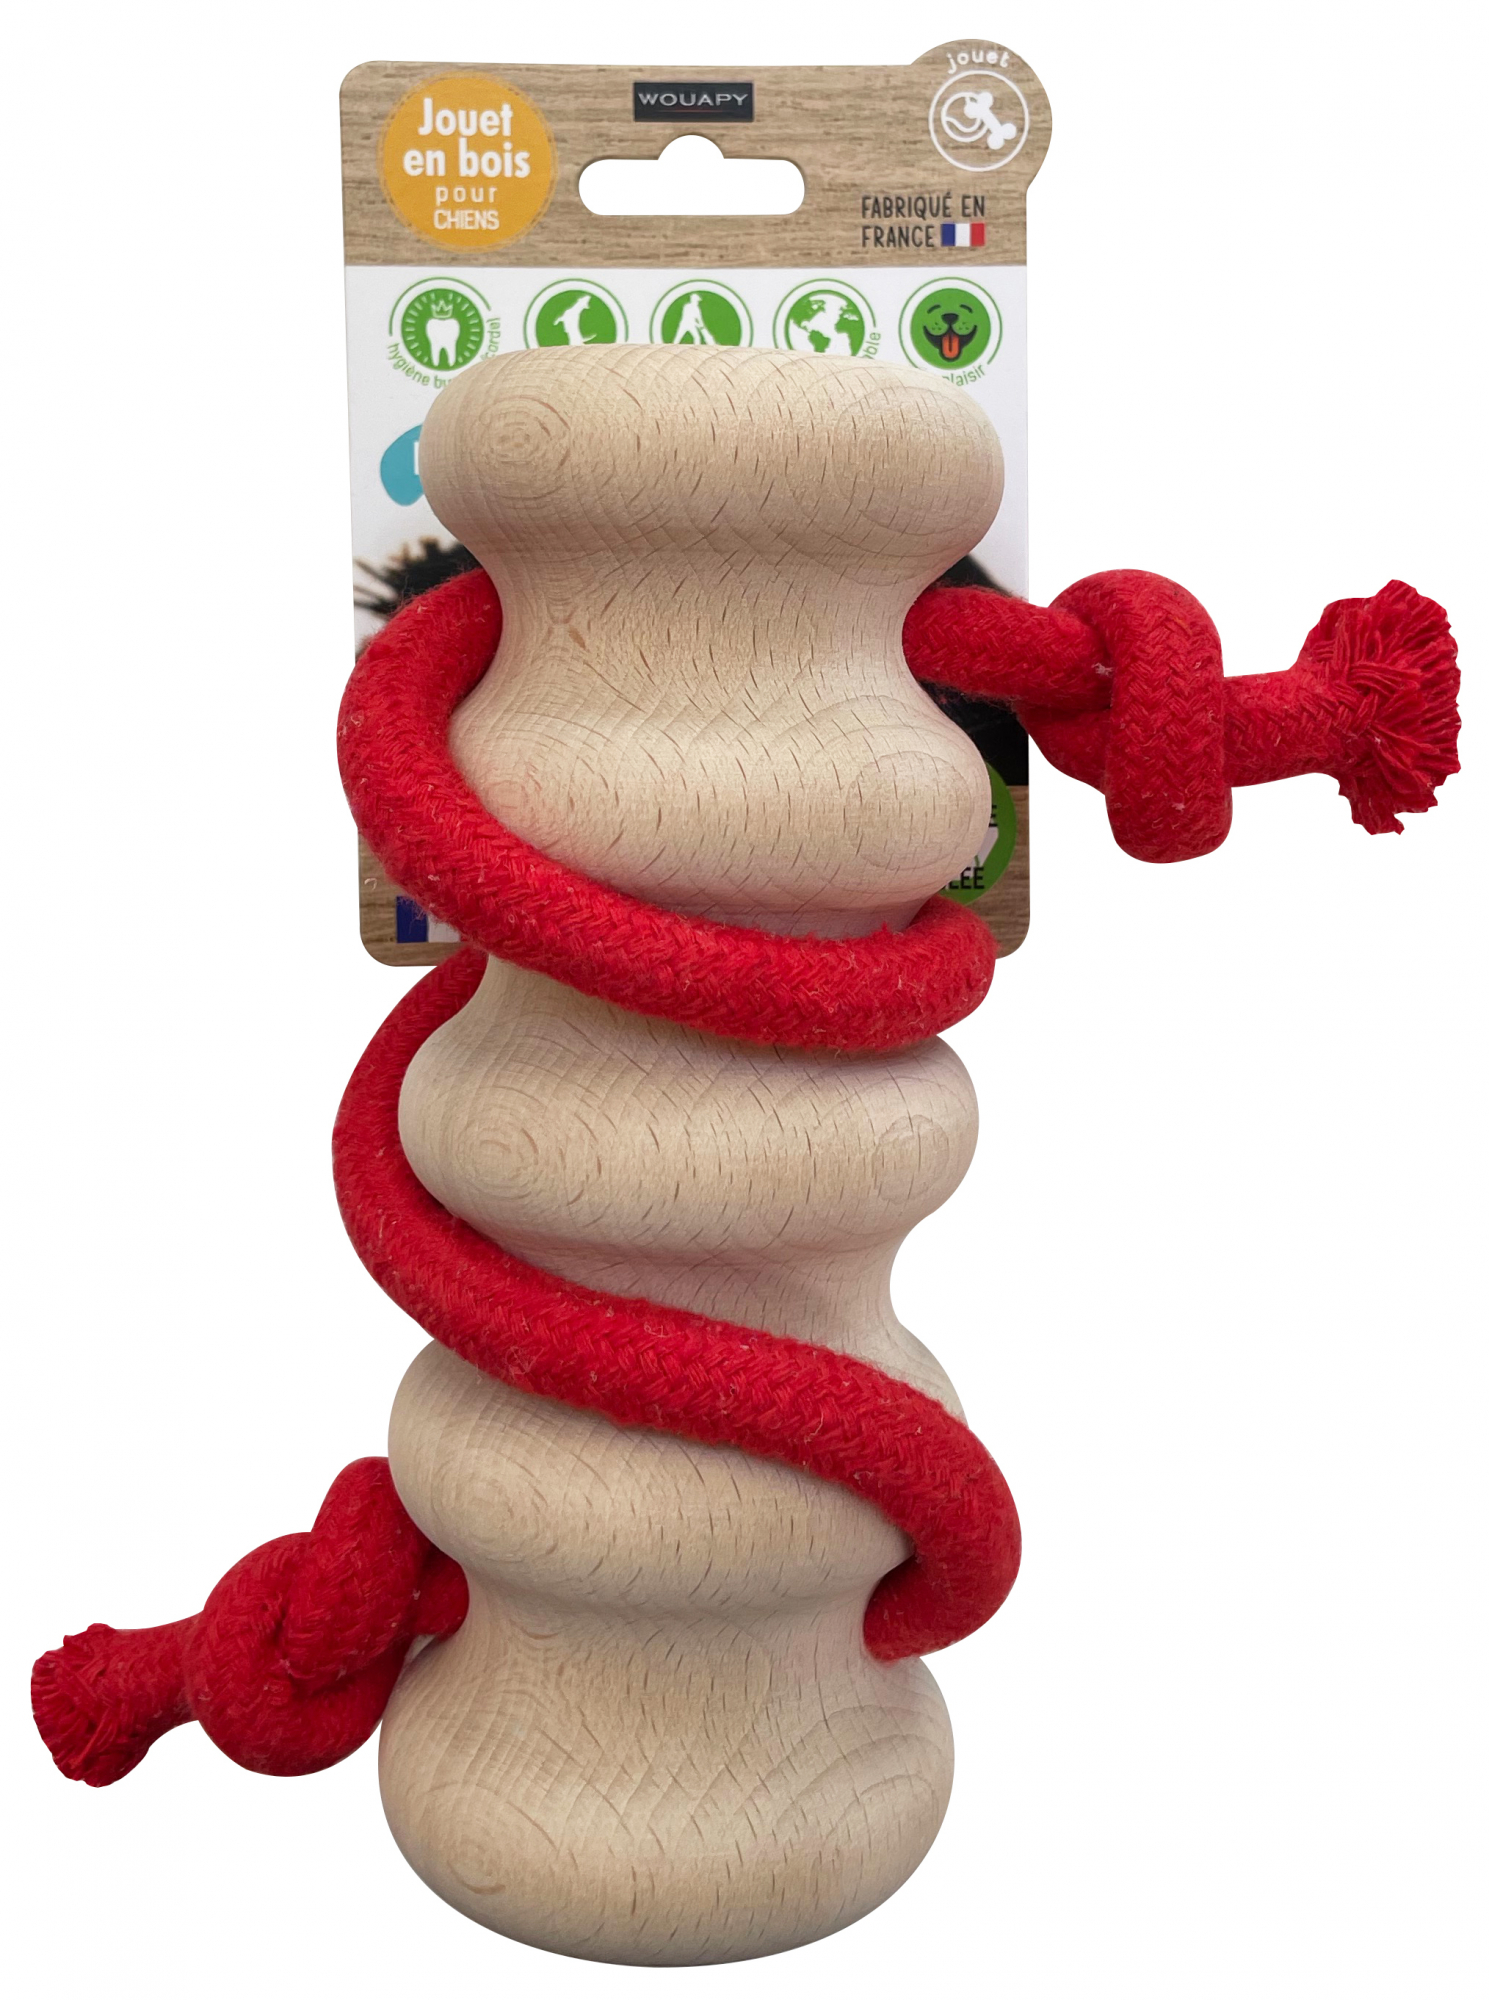 Brinquedo em madeira e corda Wave 100% reciclável - 3 cores e tamanhos disponíveis